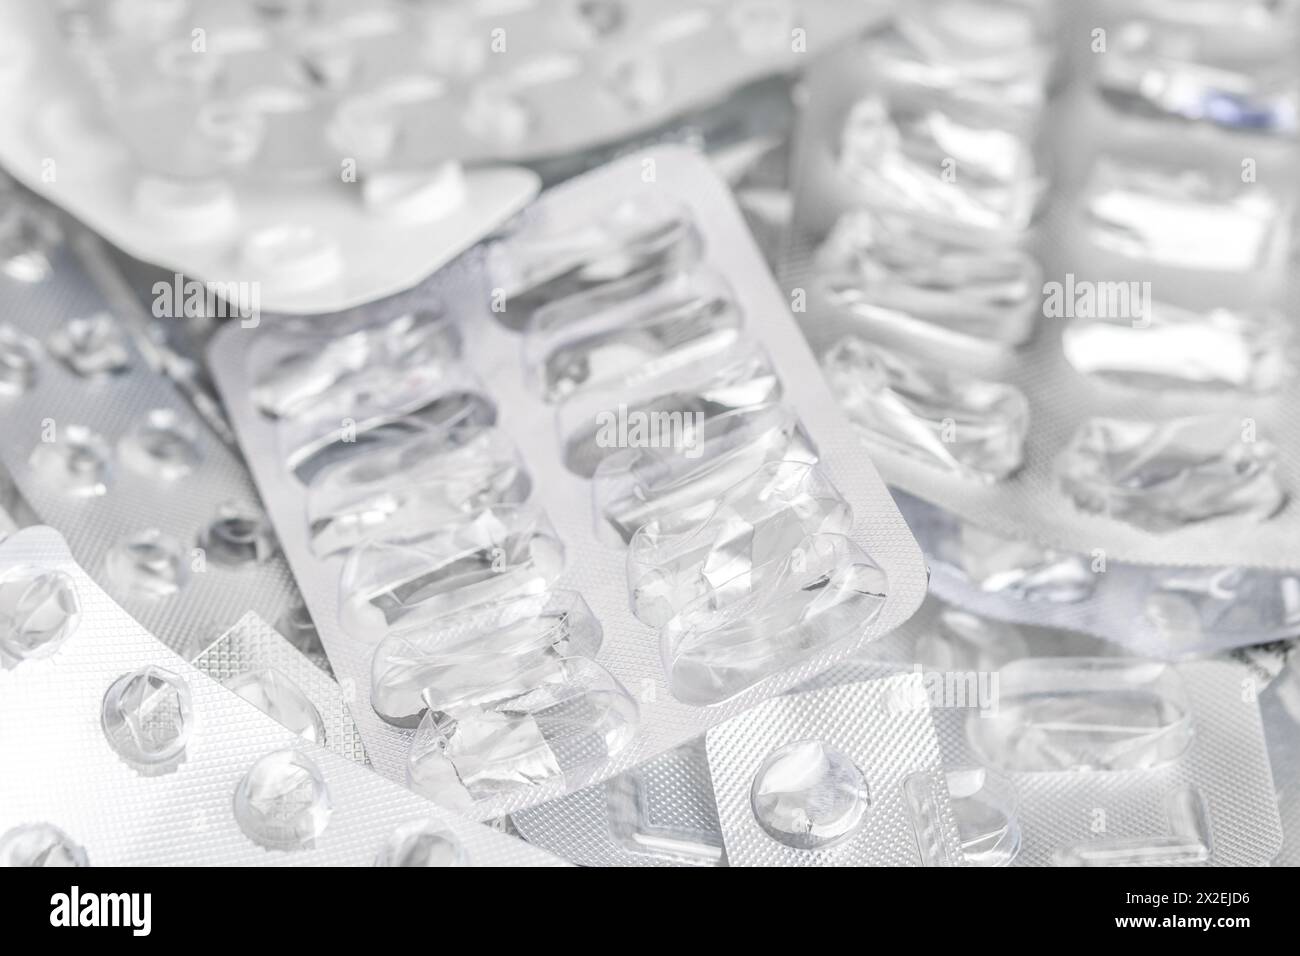 Contexte des paquets de médicaments usagés. Emballage blister en plastique vide Banque D'Images